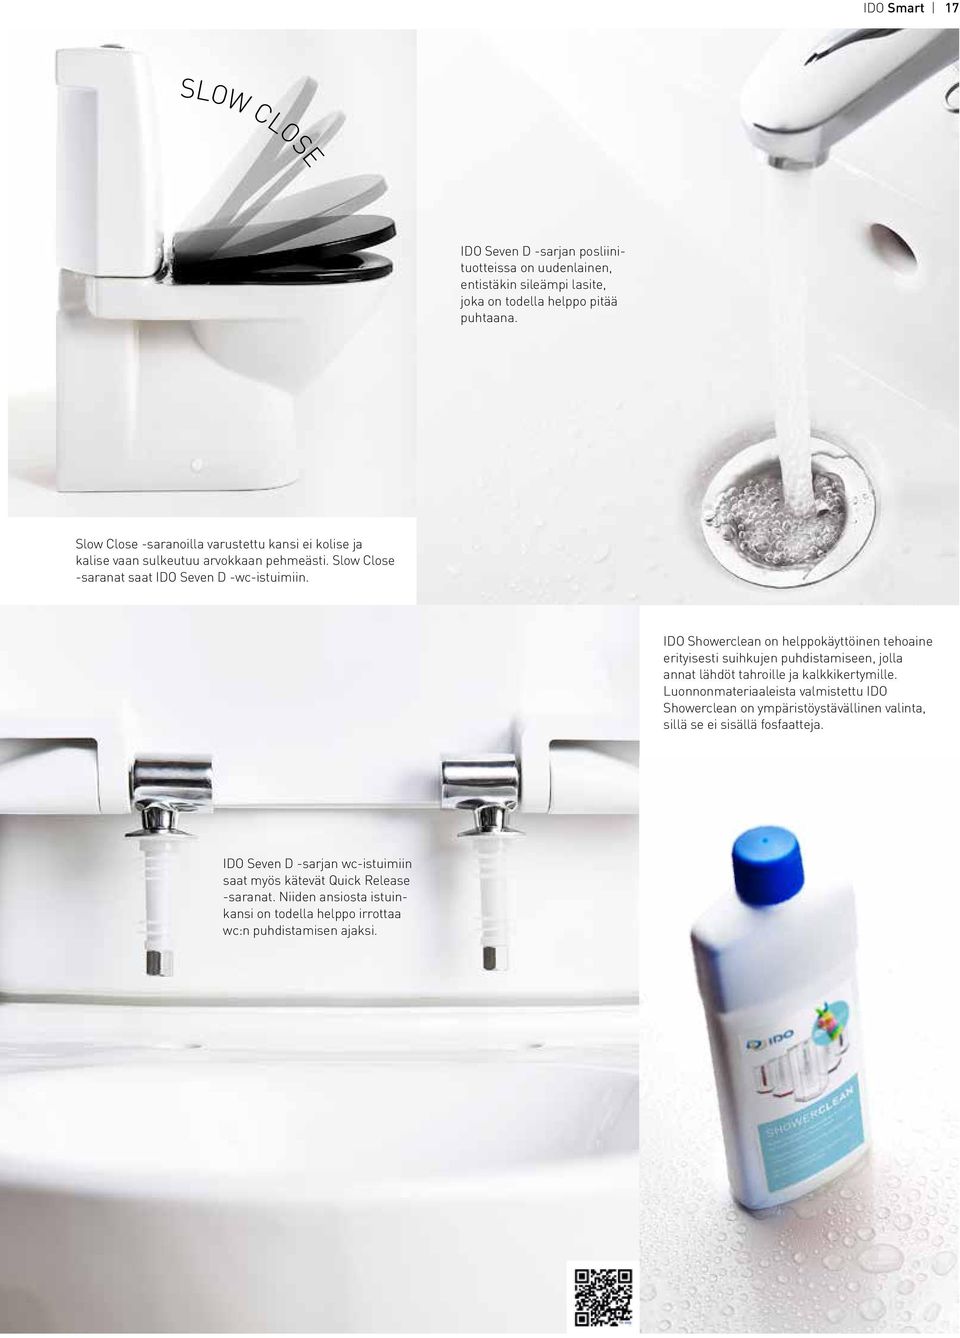 IDO Showerclean on helppokäyttöinen tehoaine erityisesti suihkujen puhdistamiseen, jolla annat lähdöt tahroille ja kalkkikertymille.